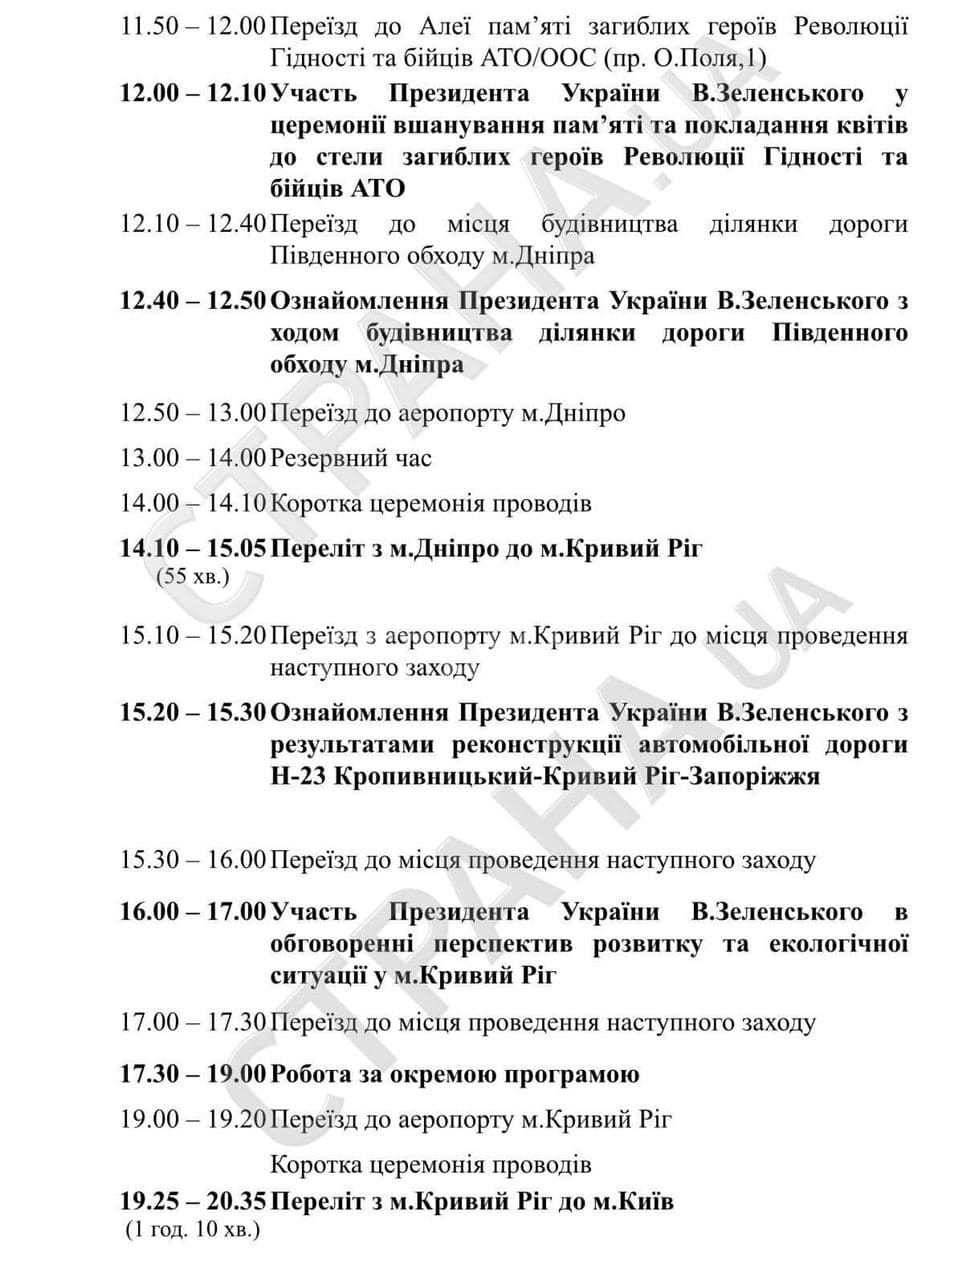 Рабочая программа Зеленского в Днепропетровскую область. Скриншот: strana.ua